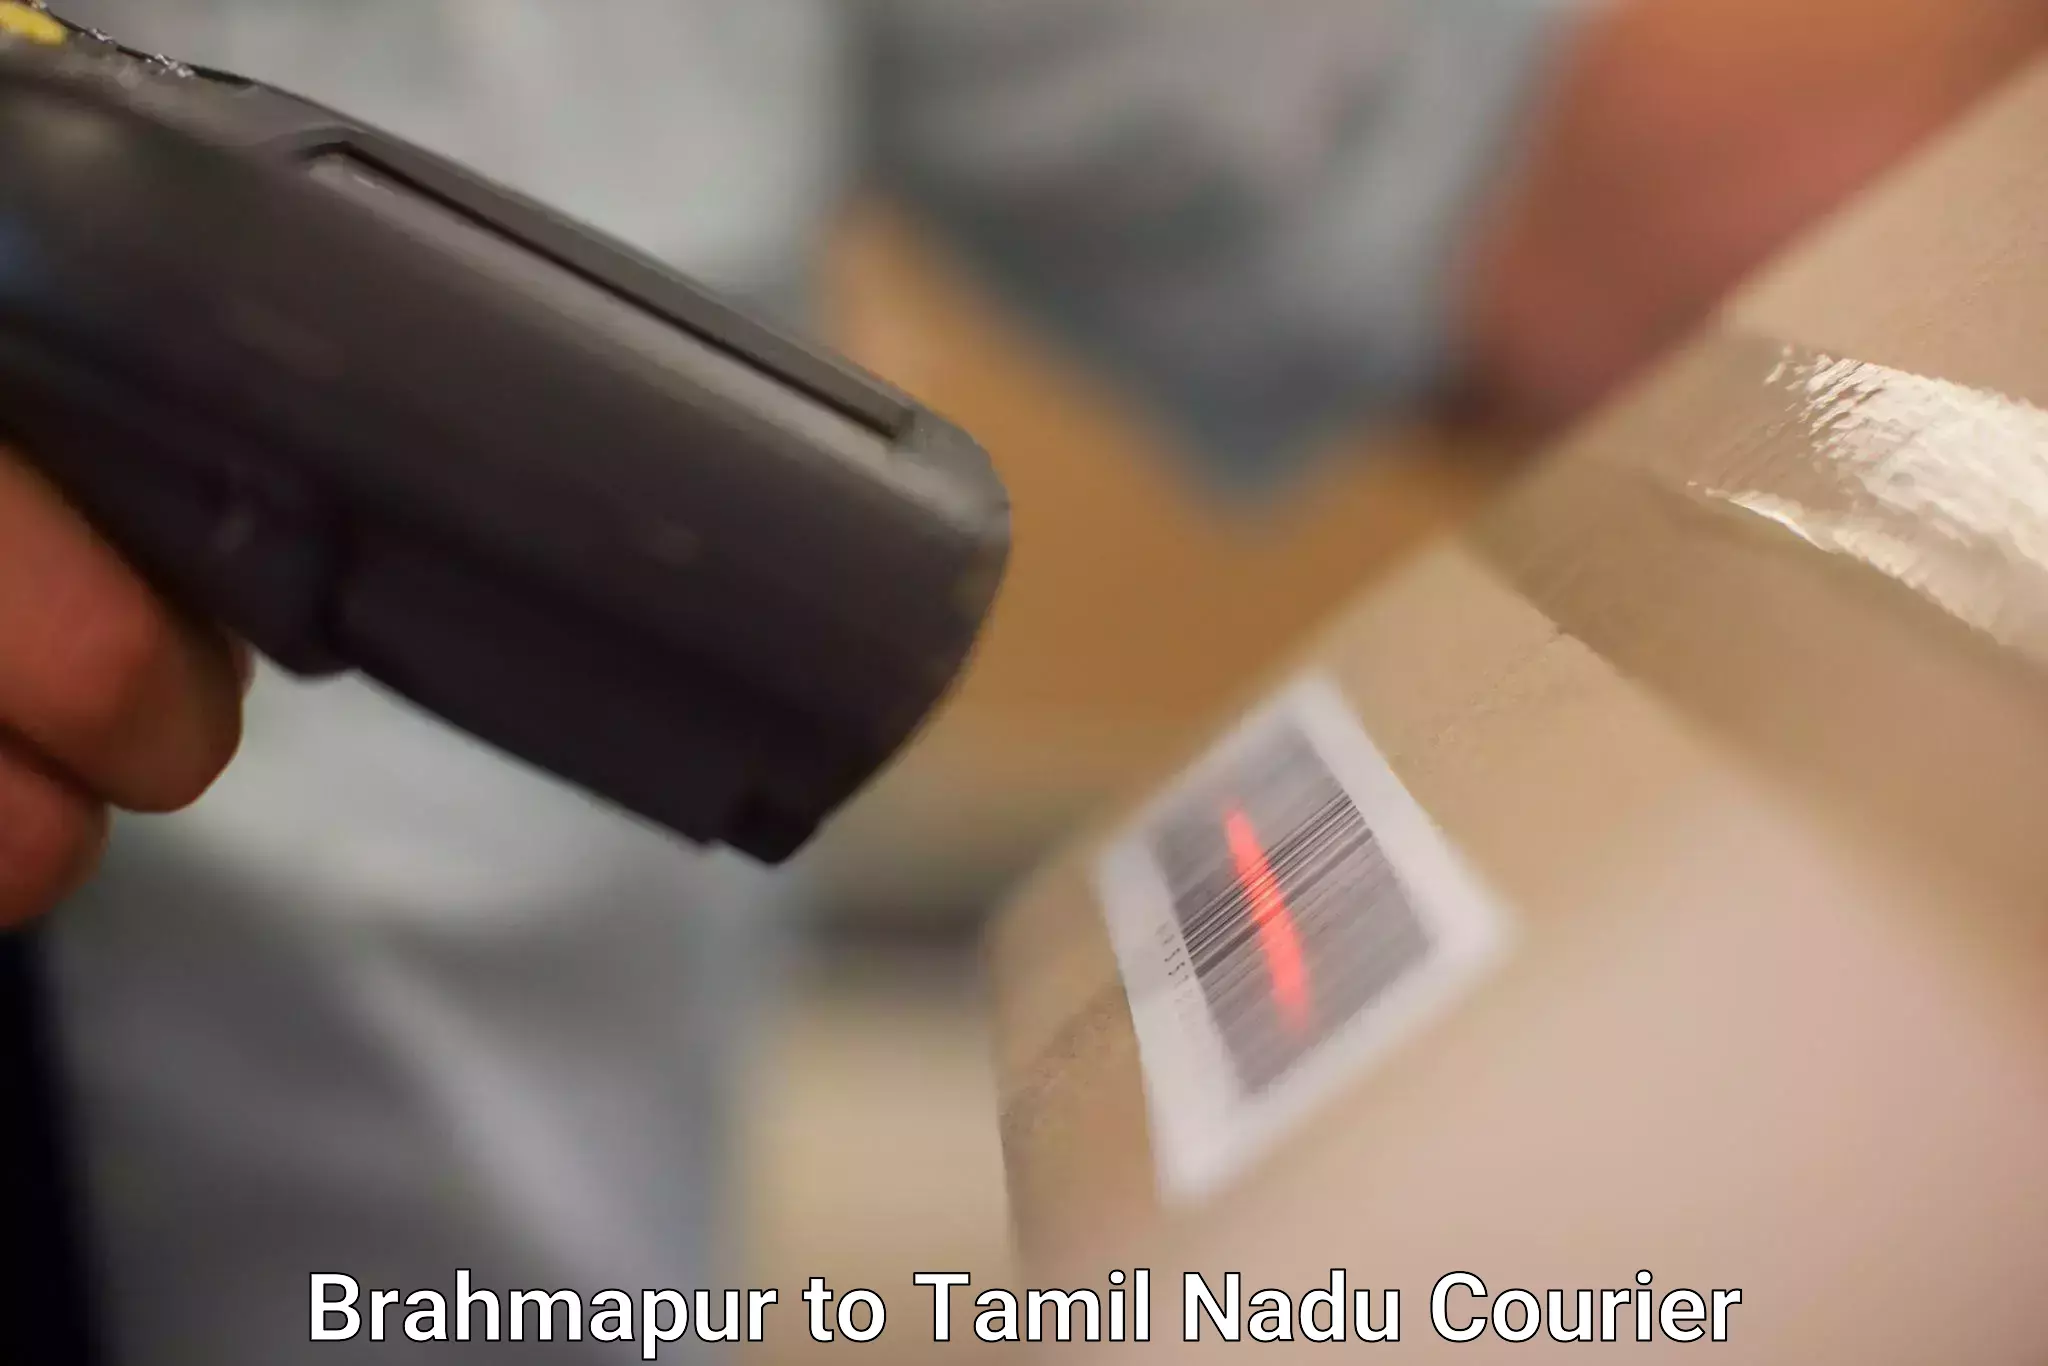 Secure packaging Brahmapur to Tamil Nadu